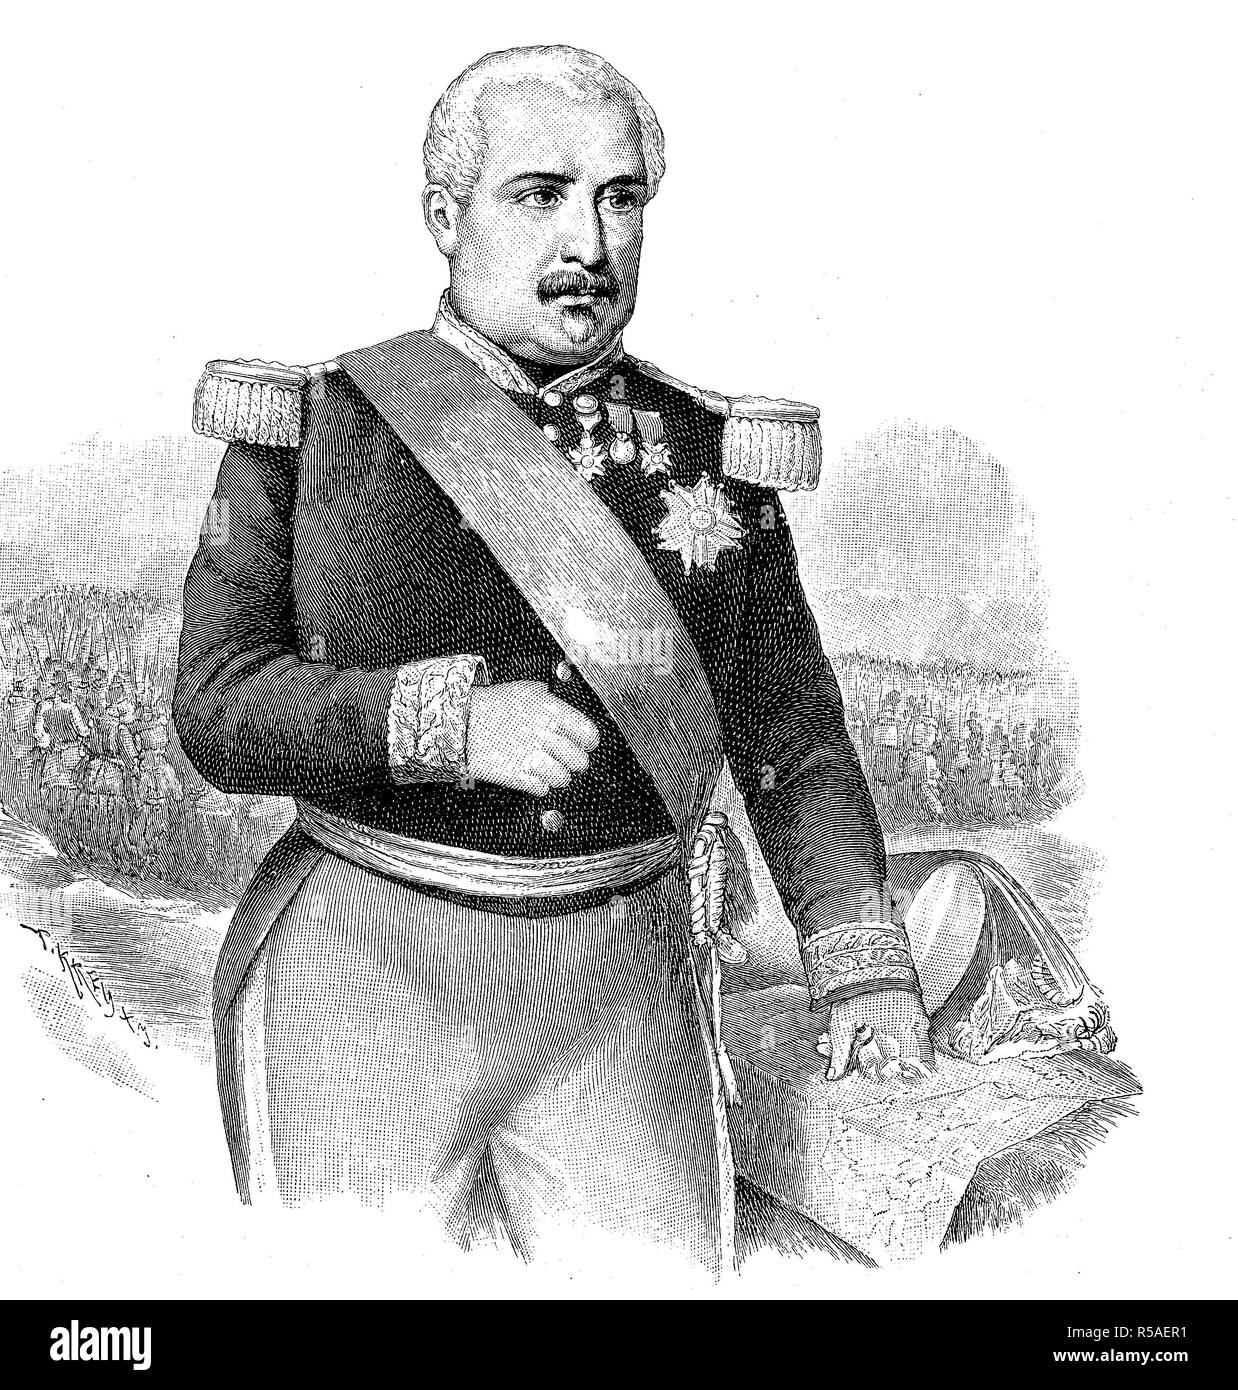 Aimable-Jean-Jacques Pelissier, desde 1856 Duque de Malakoff, 6 de noviembre de 1794, 22 de mayo de 1864, xilografía, Francia Foto de stock